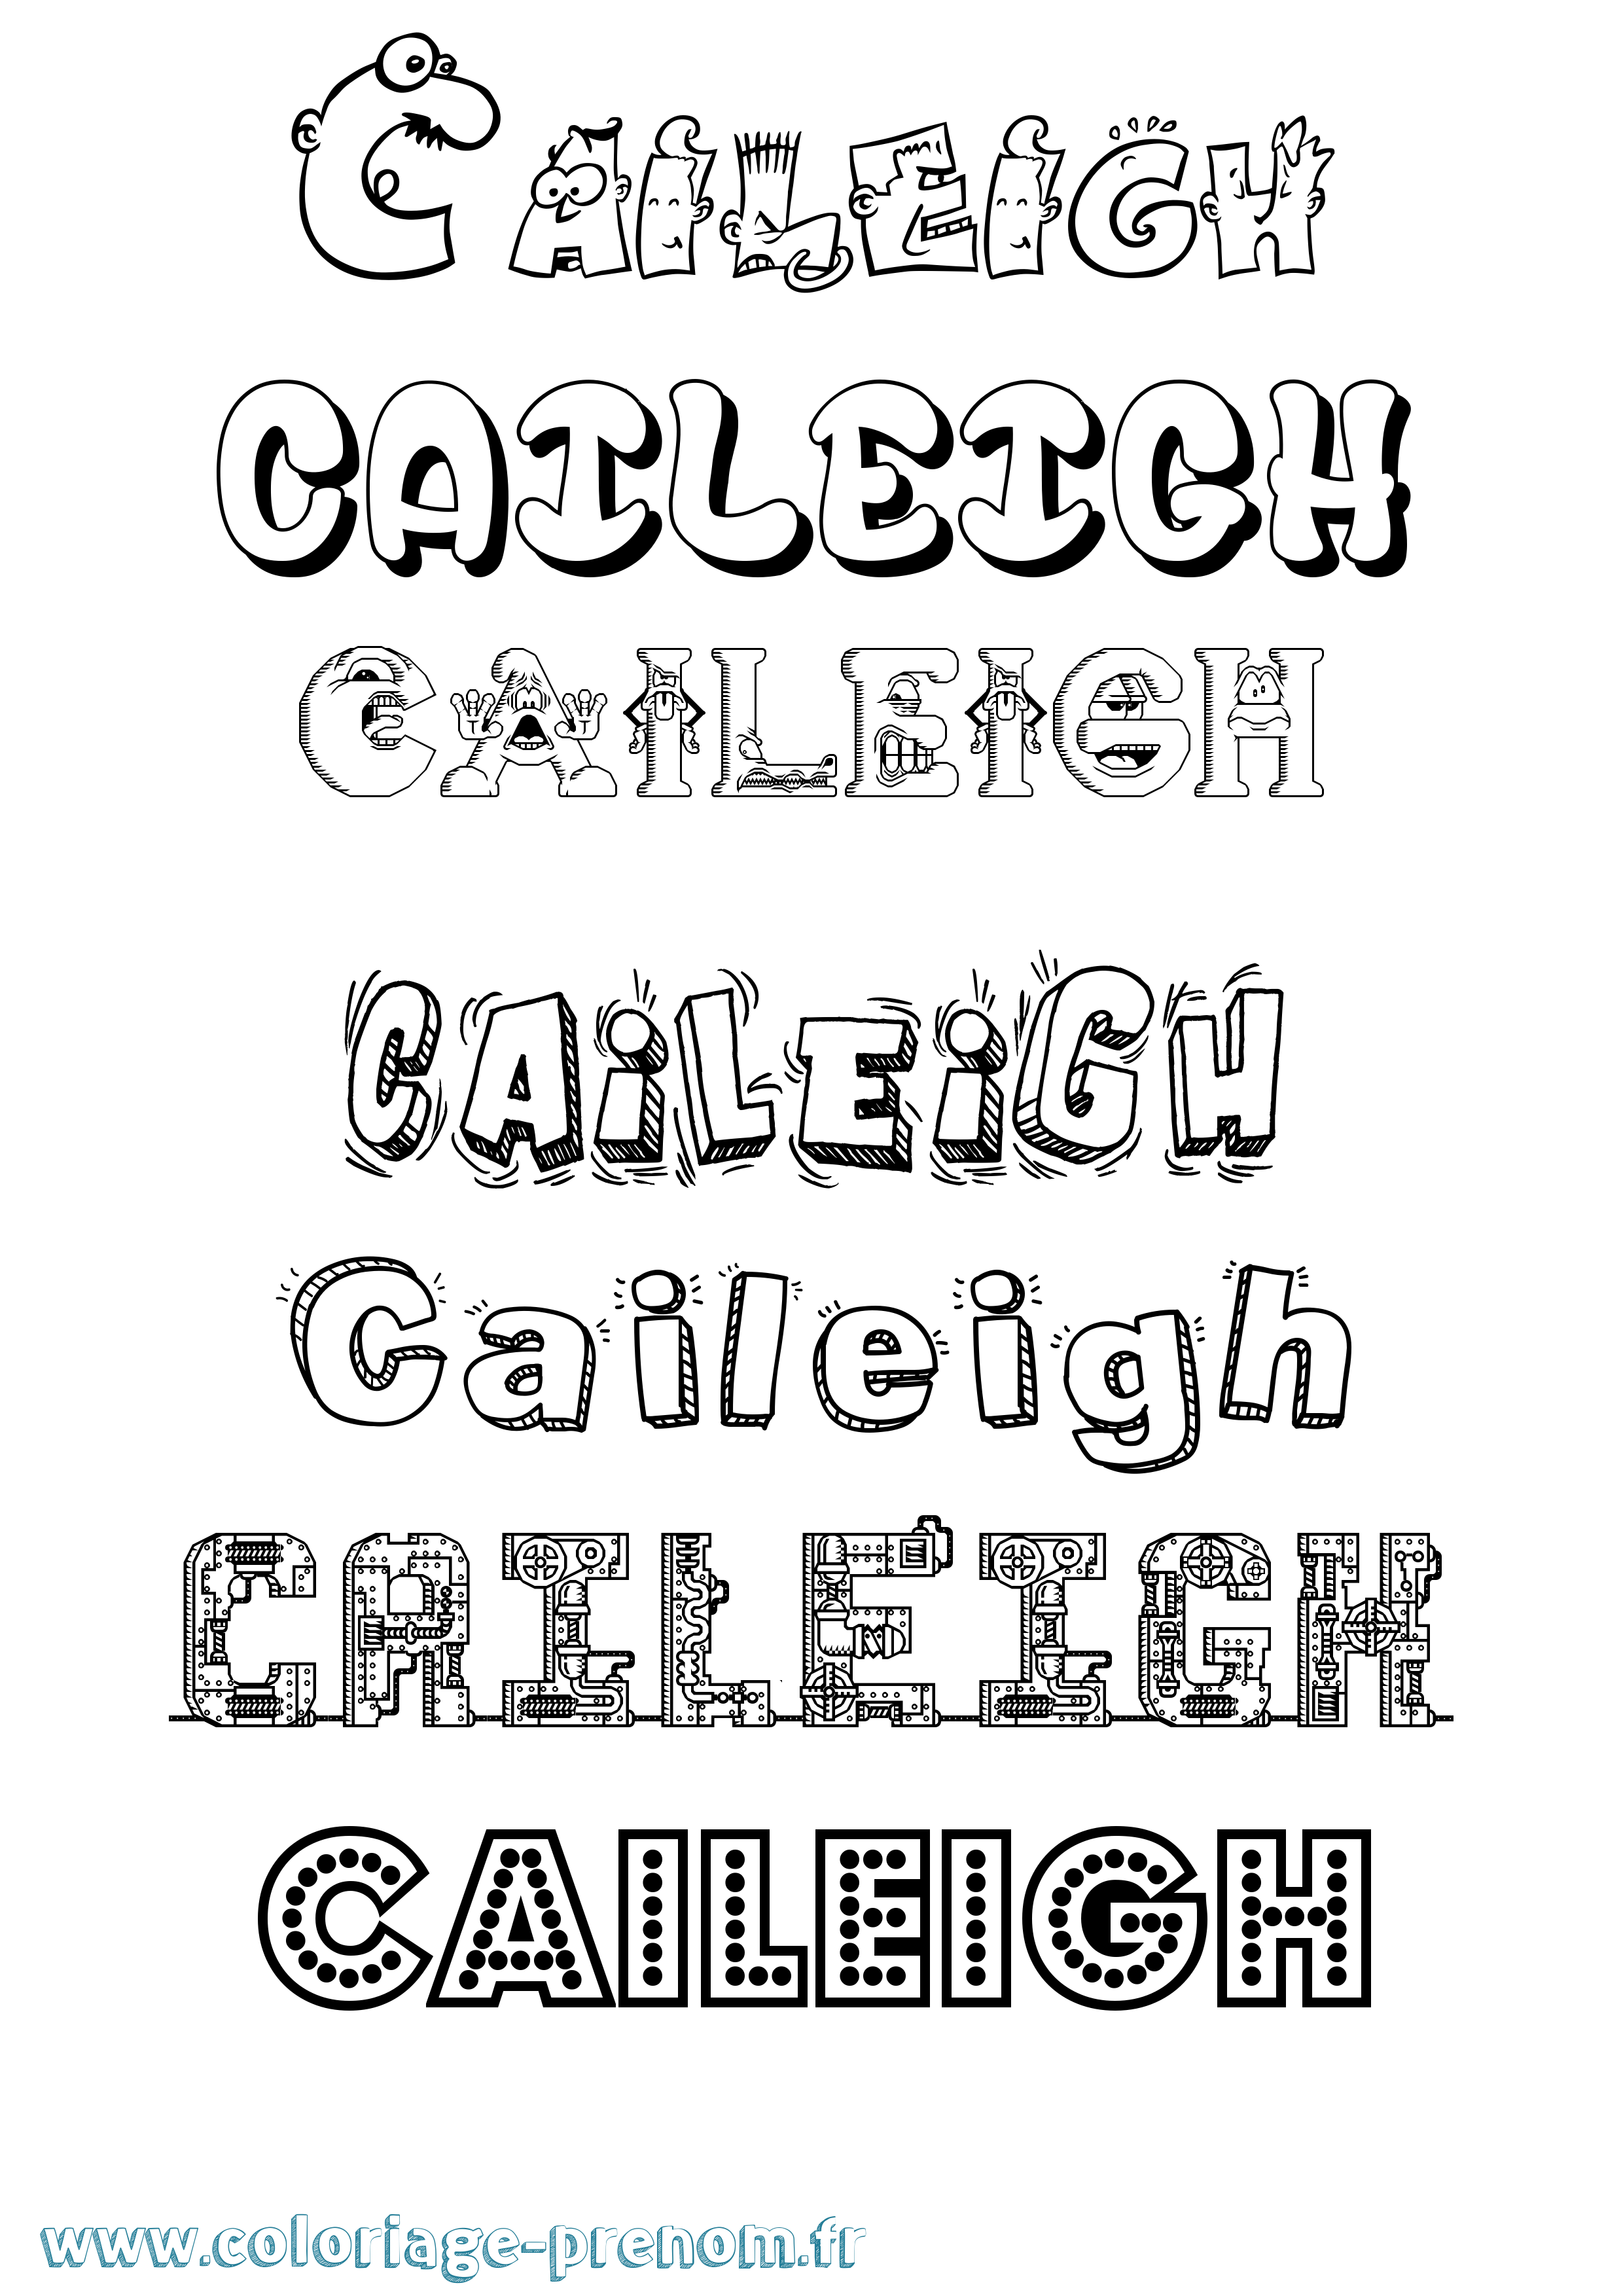 Coloriage prénom Caileigh Fun